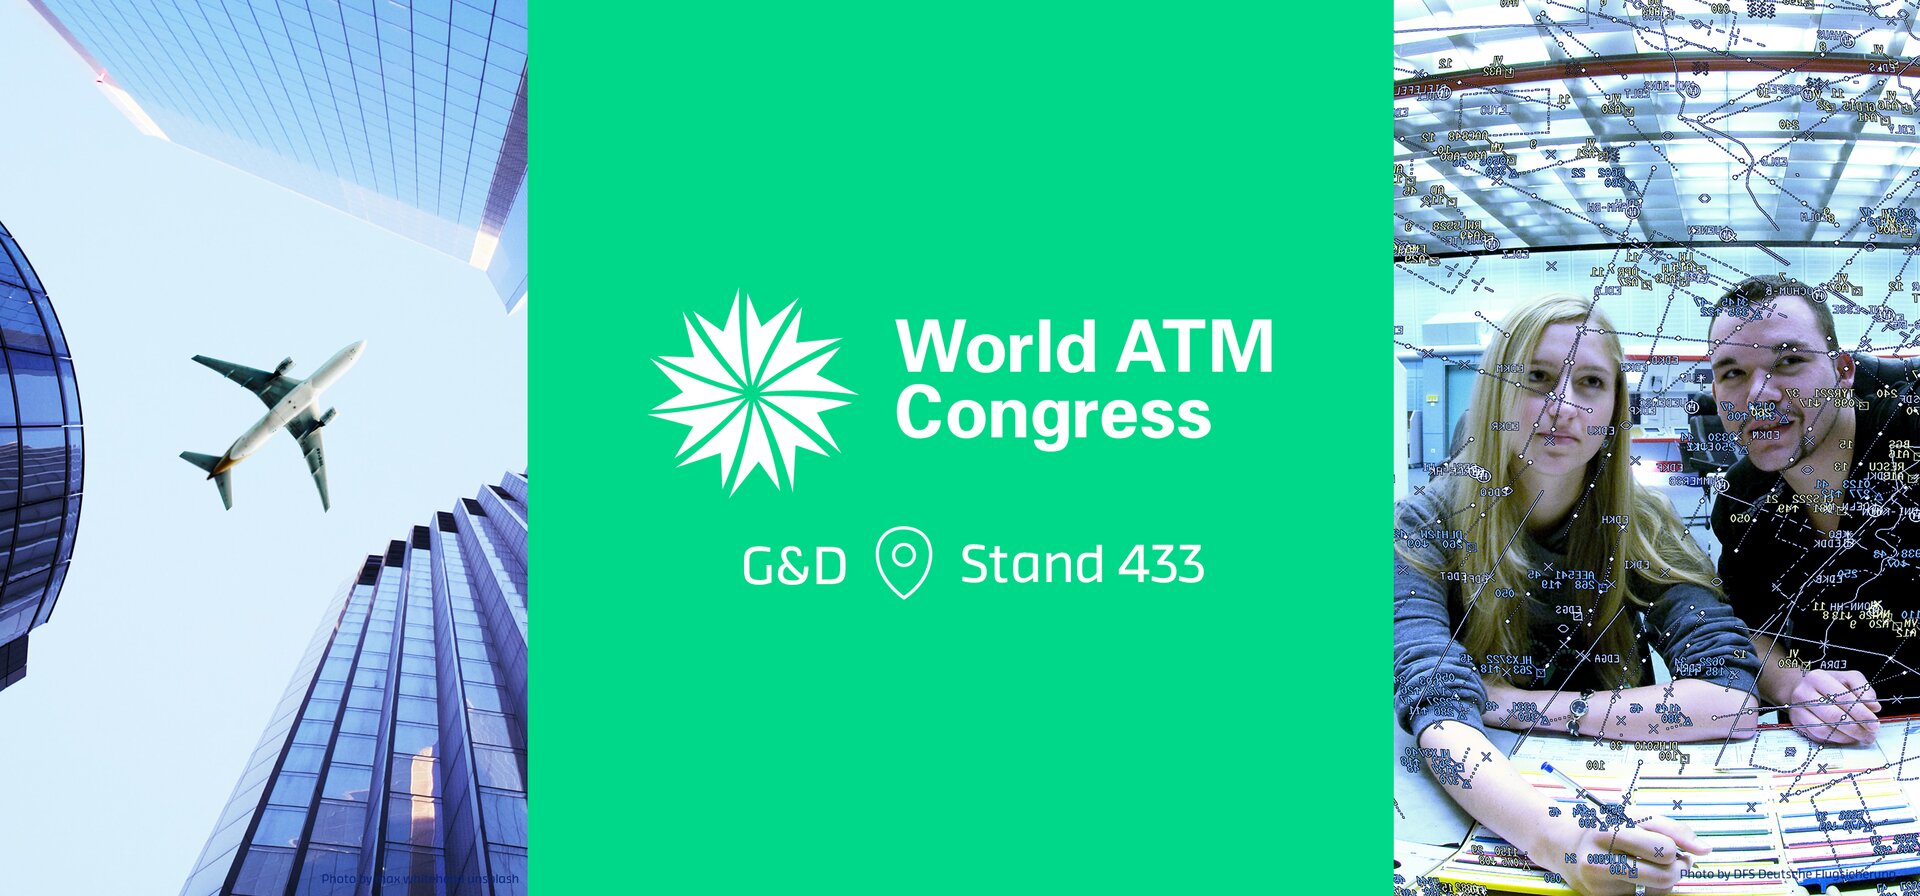 G&D auf dem World ATM Congress 2022